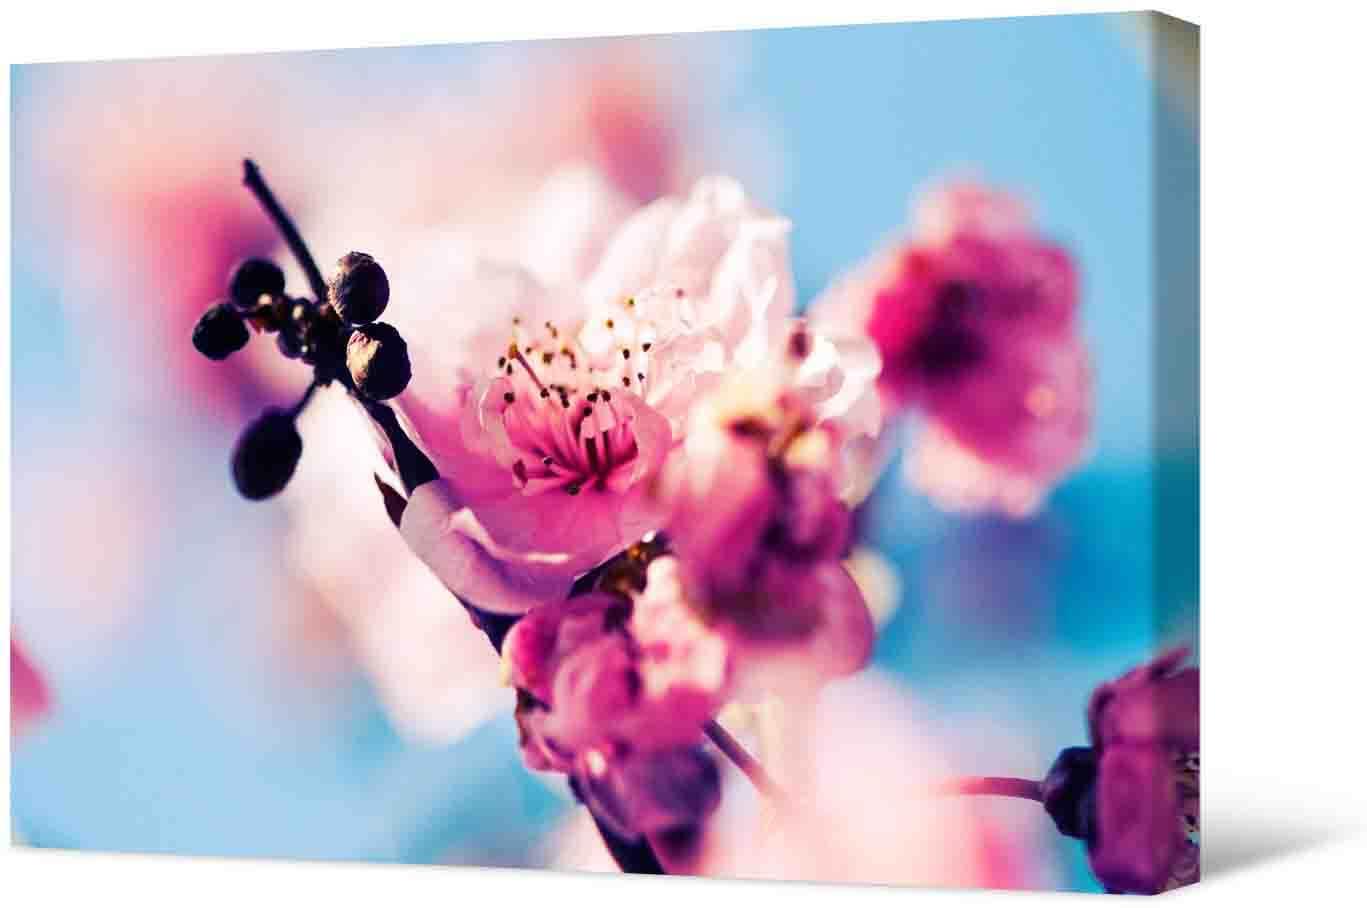 Paveikslėlis Nuotrauka - gražios gėlės ant medžio šakos